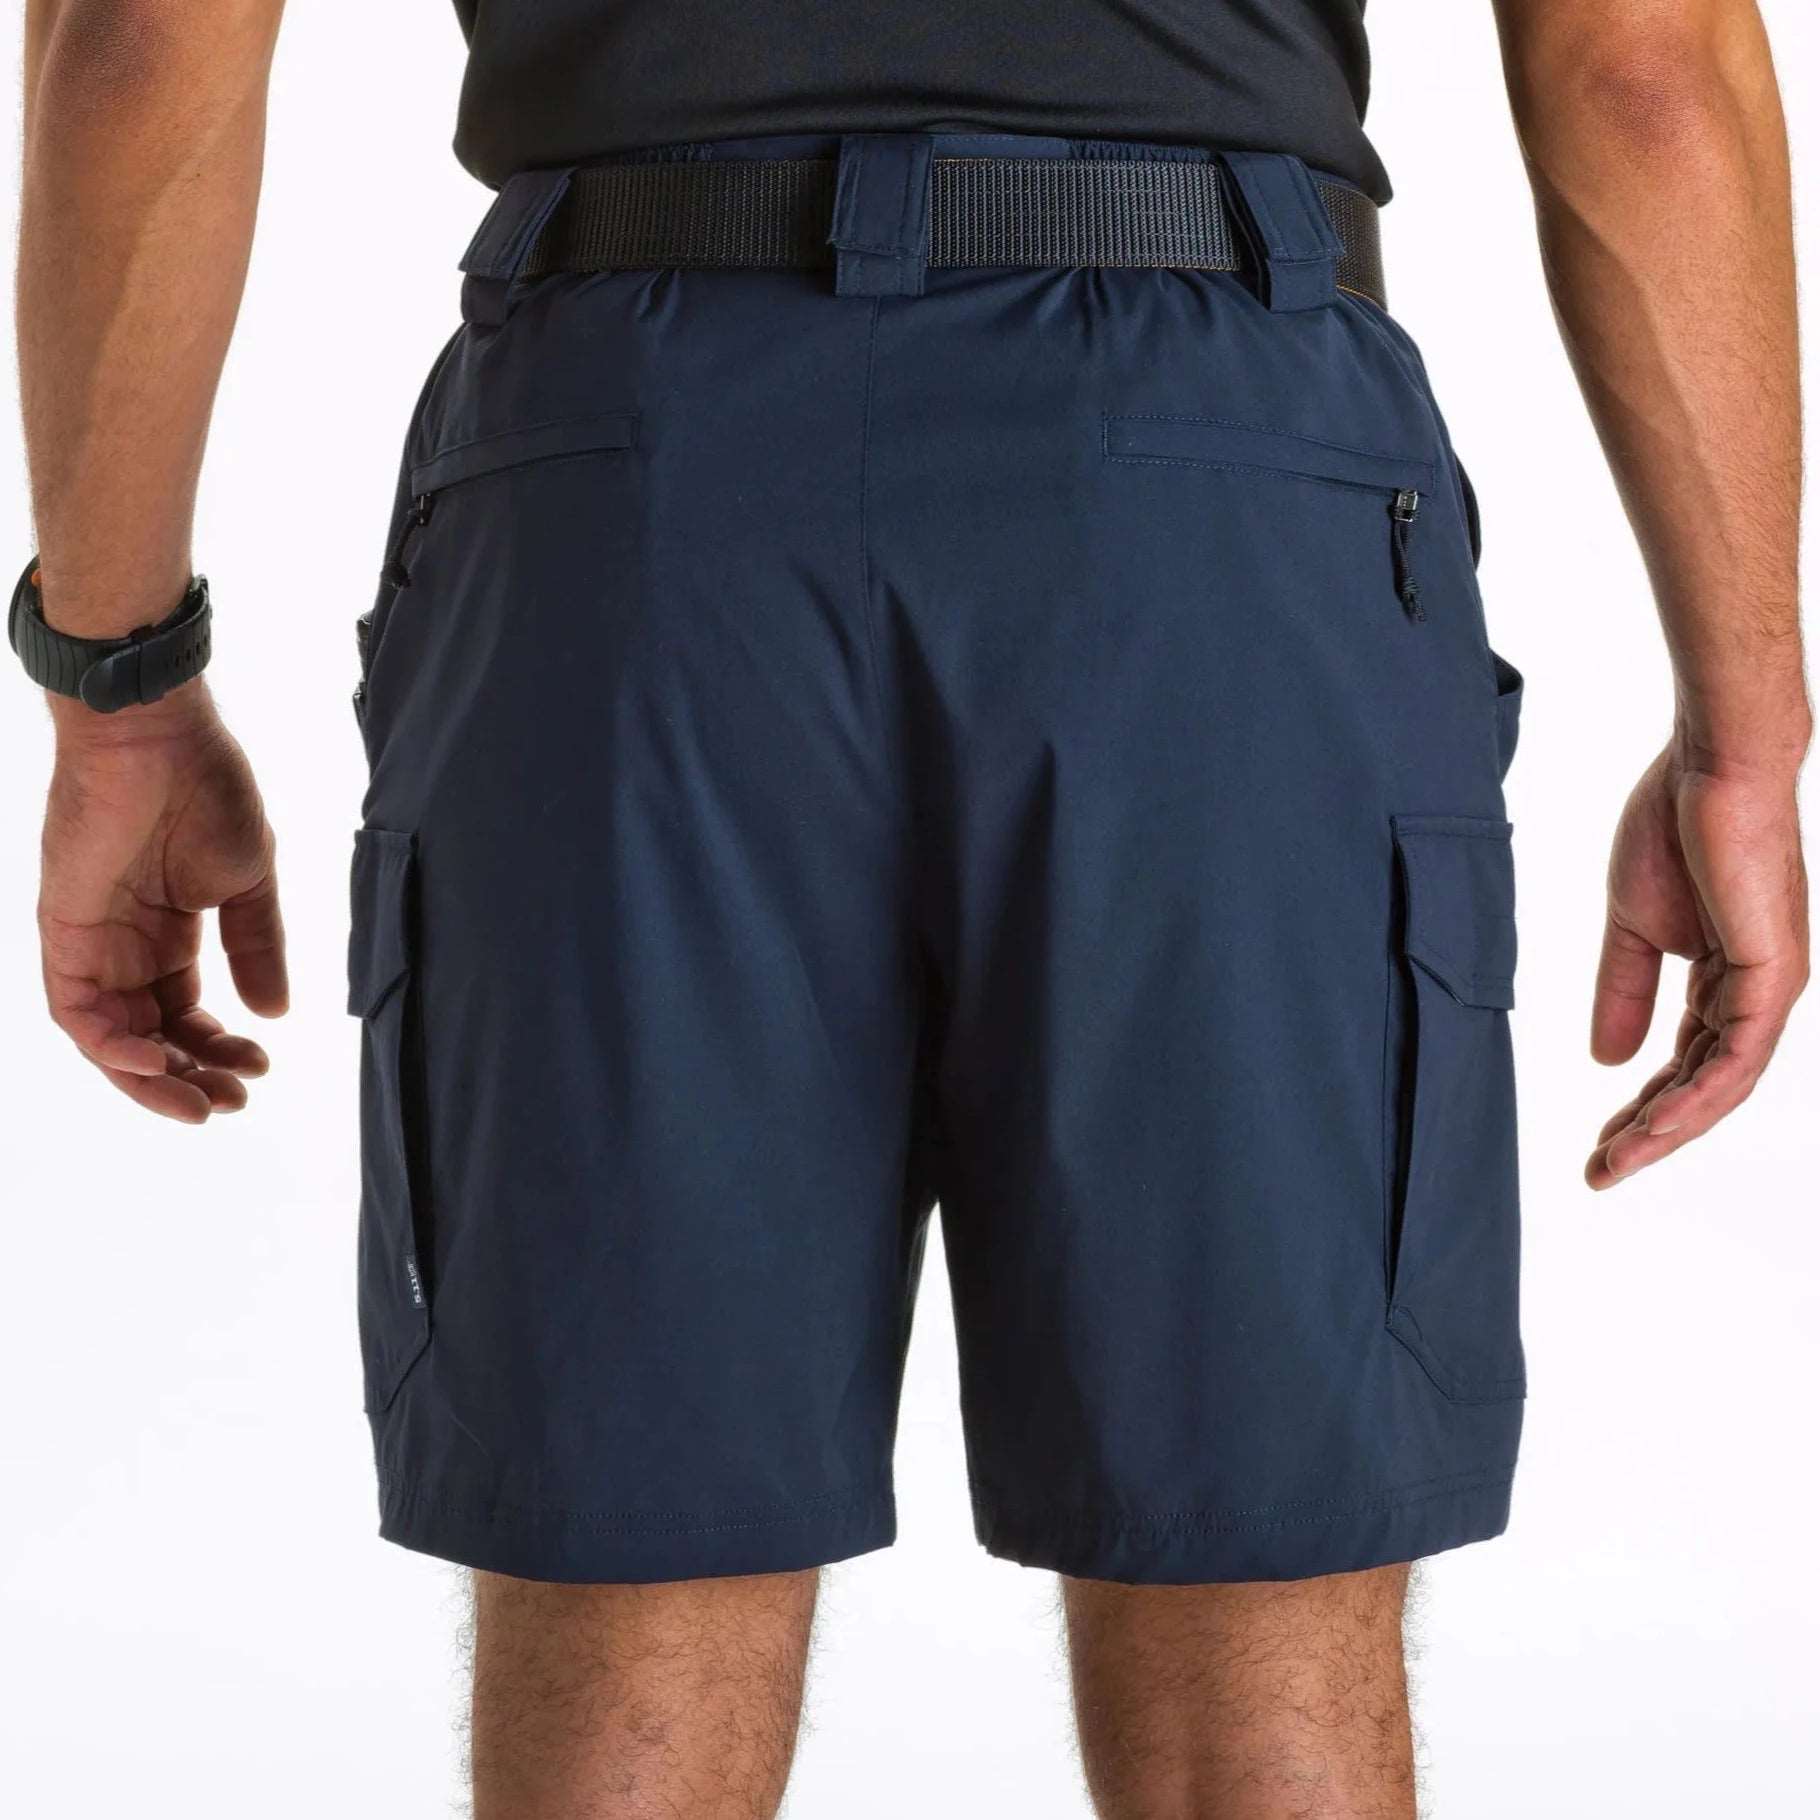 Shorts - 5.11 Tactical Patrol 9" Shorts